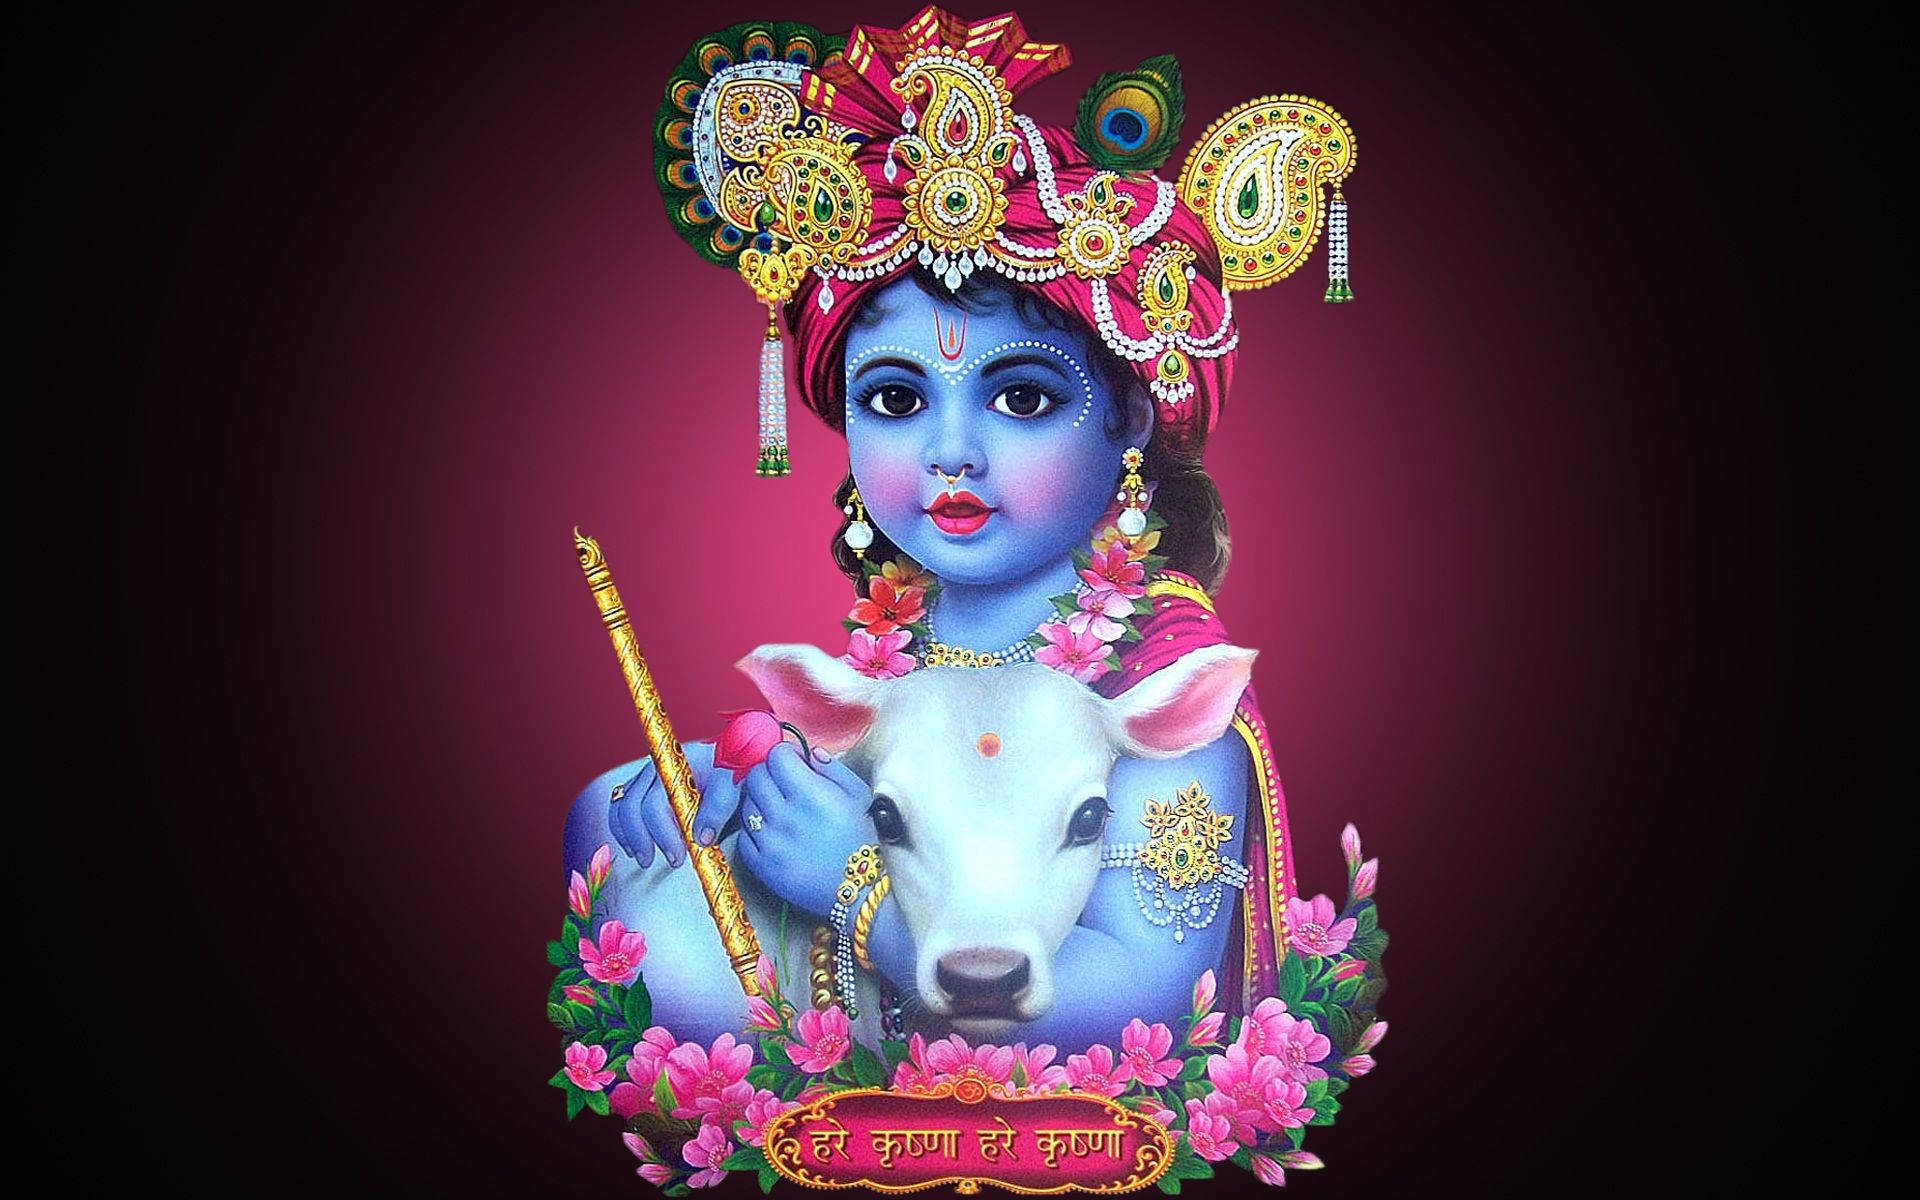 Radha Krishna Swing Wallpaper  Ultra Hd Hd Images Of Radha Krishna   1600x1200 Wallpaper  teahubio